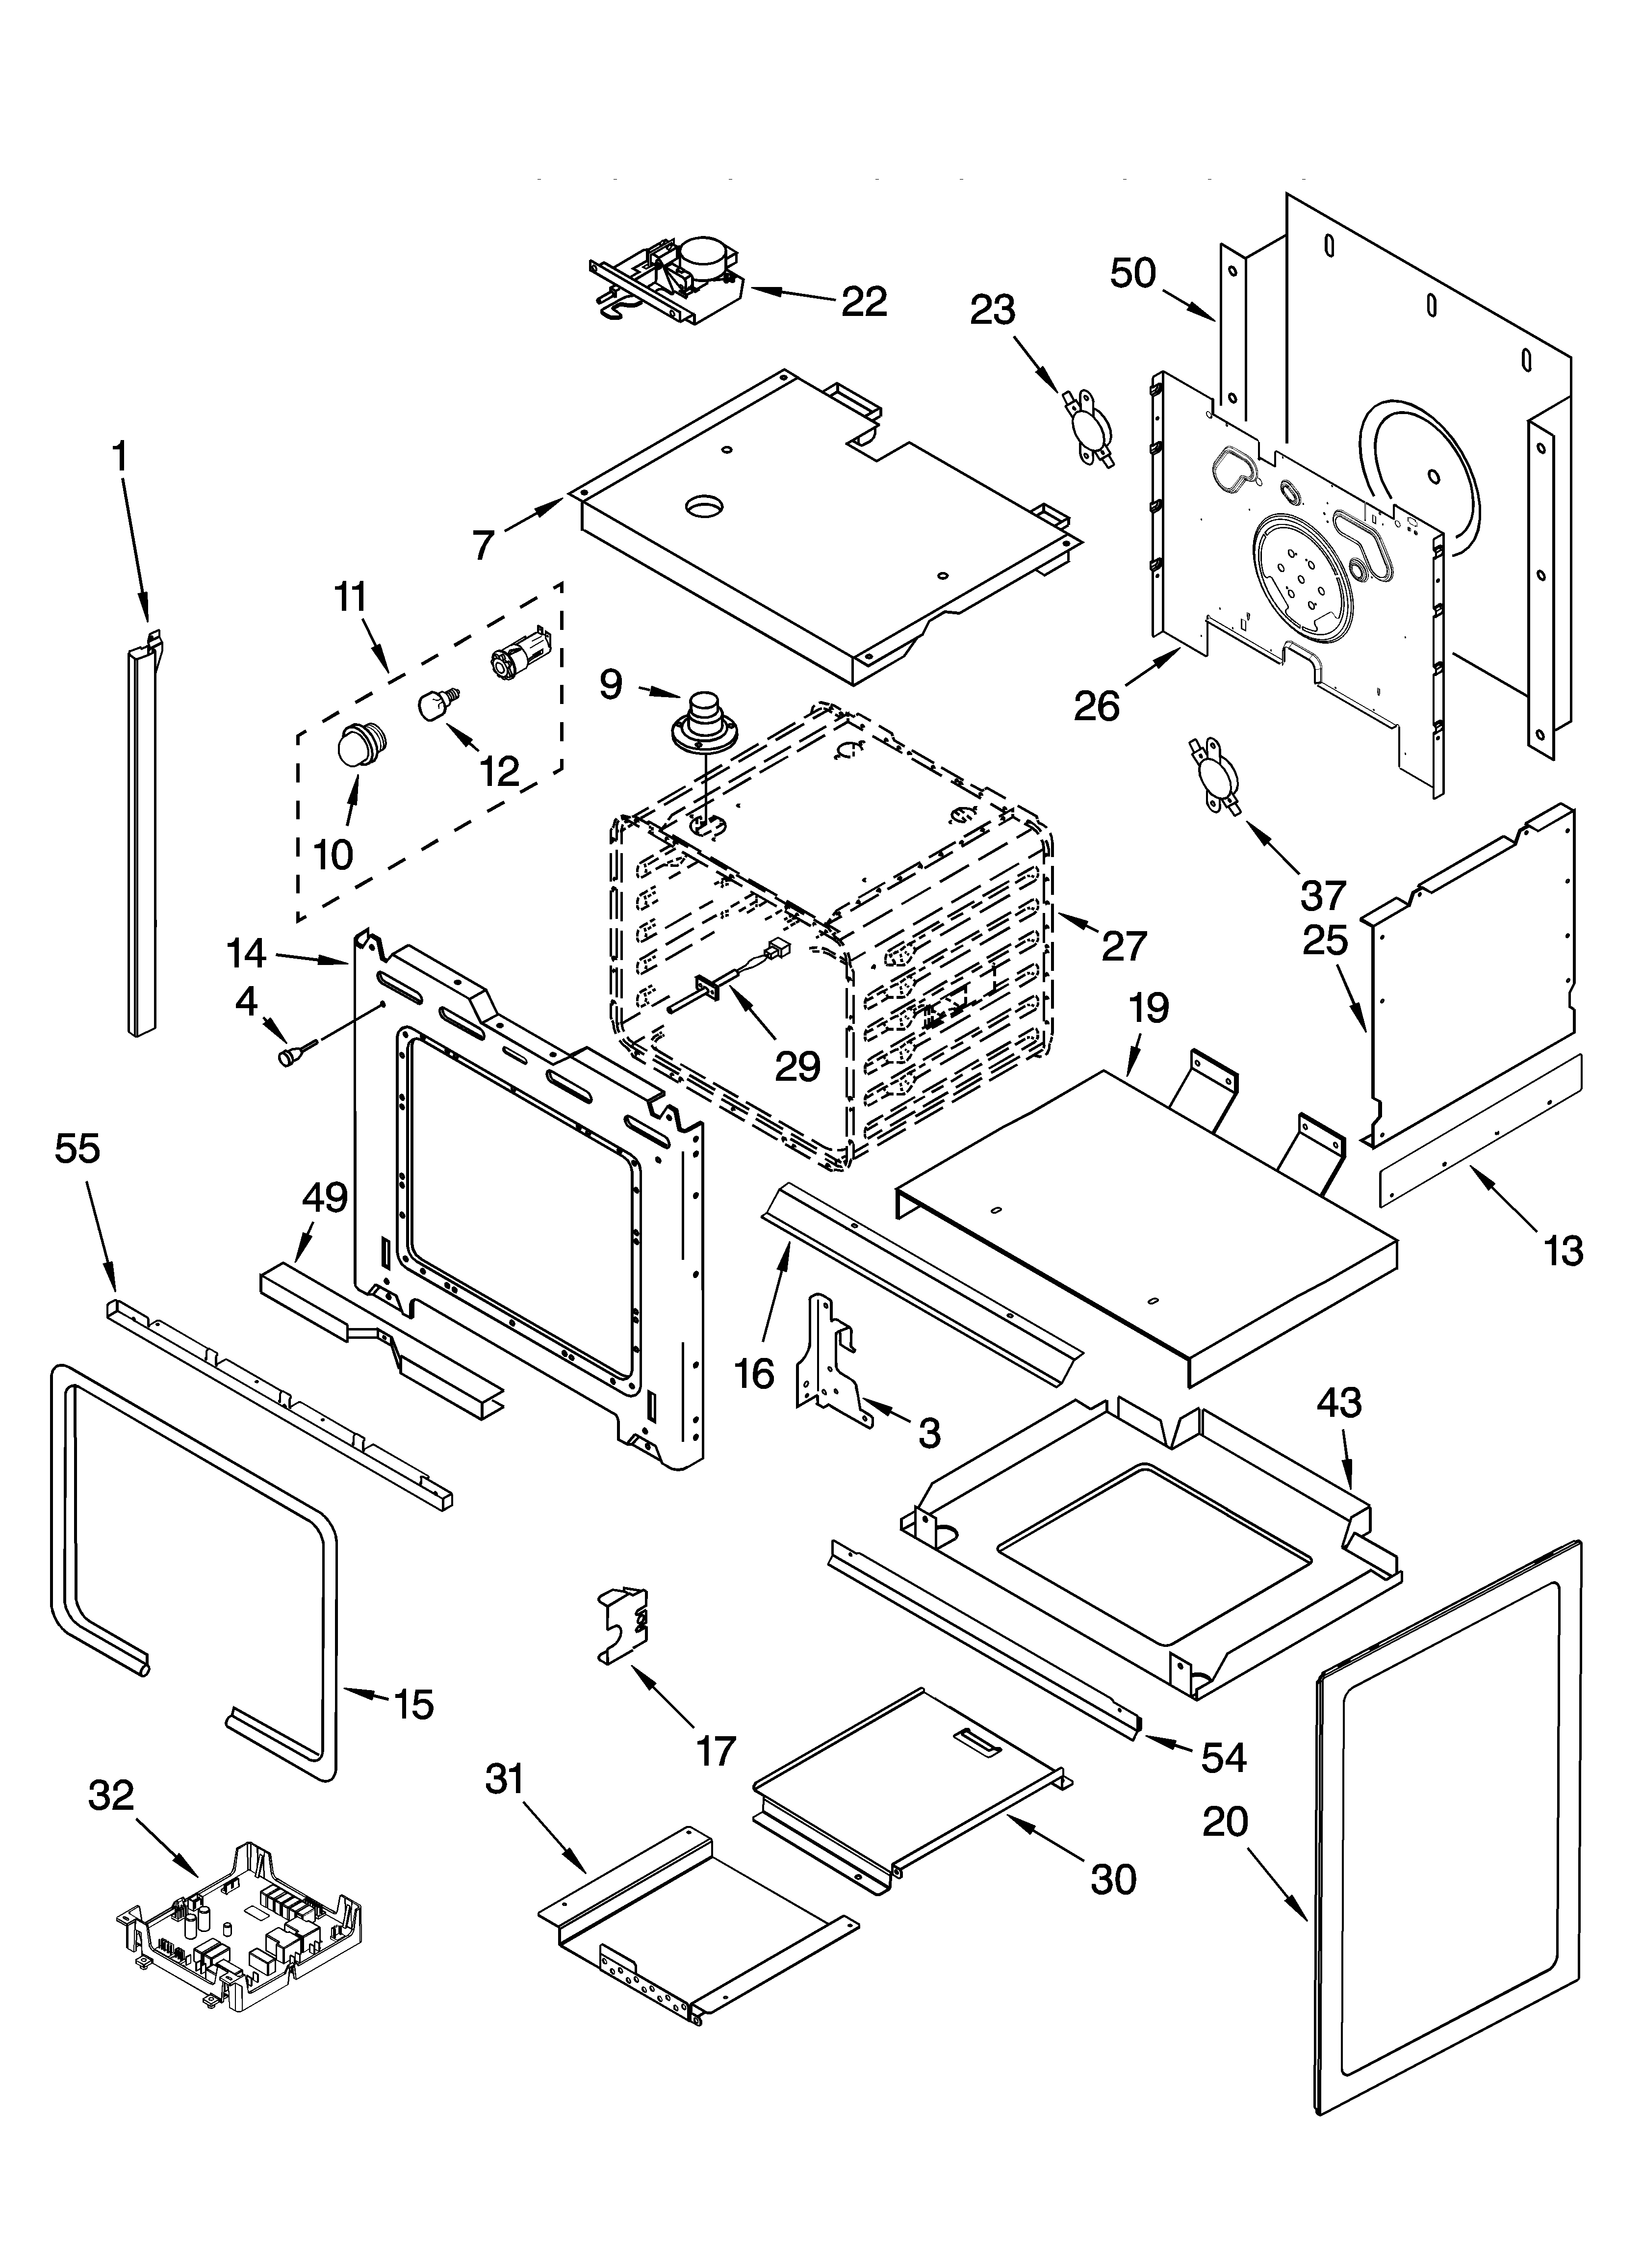 Oven Parts Diagram  U0026 Parts List For Model Kesa907pbl00